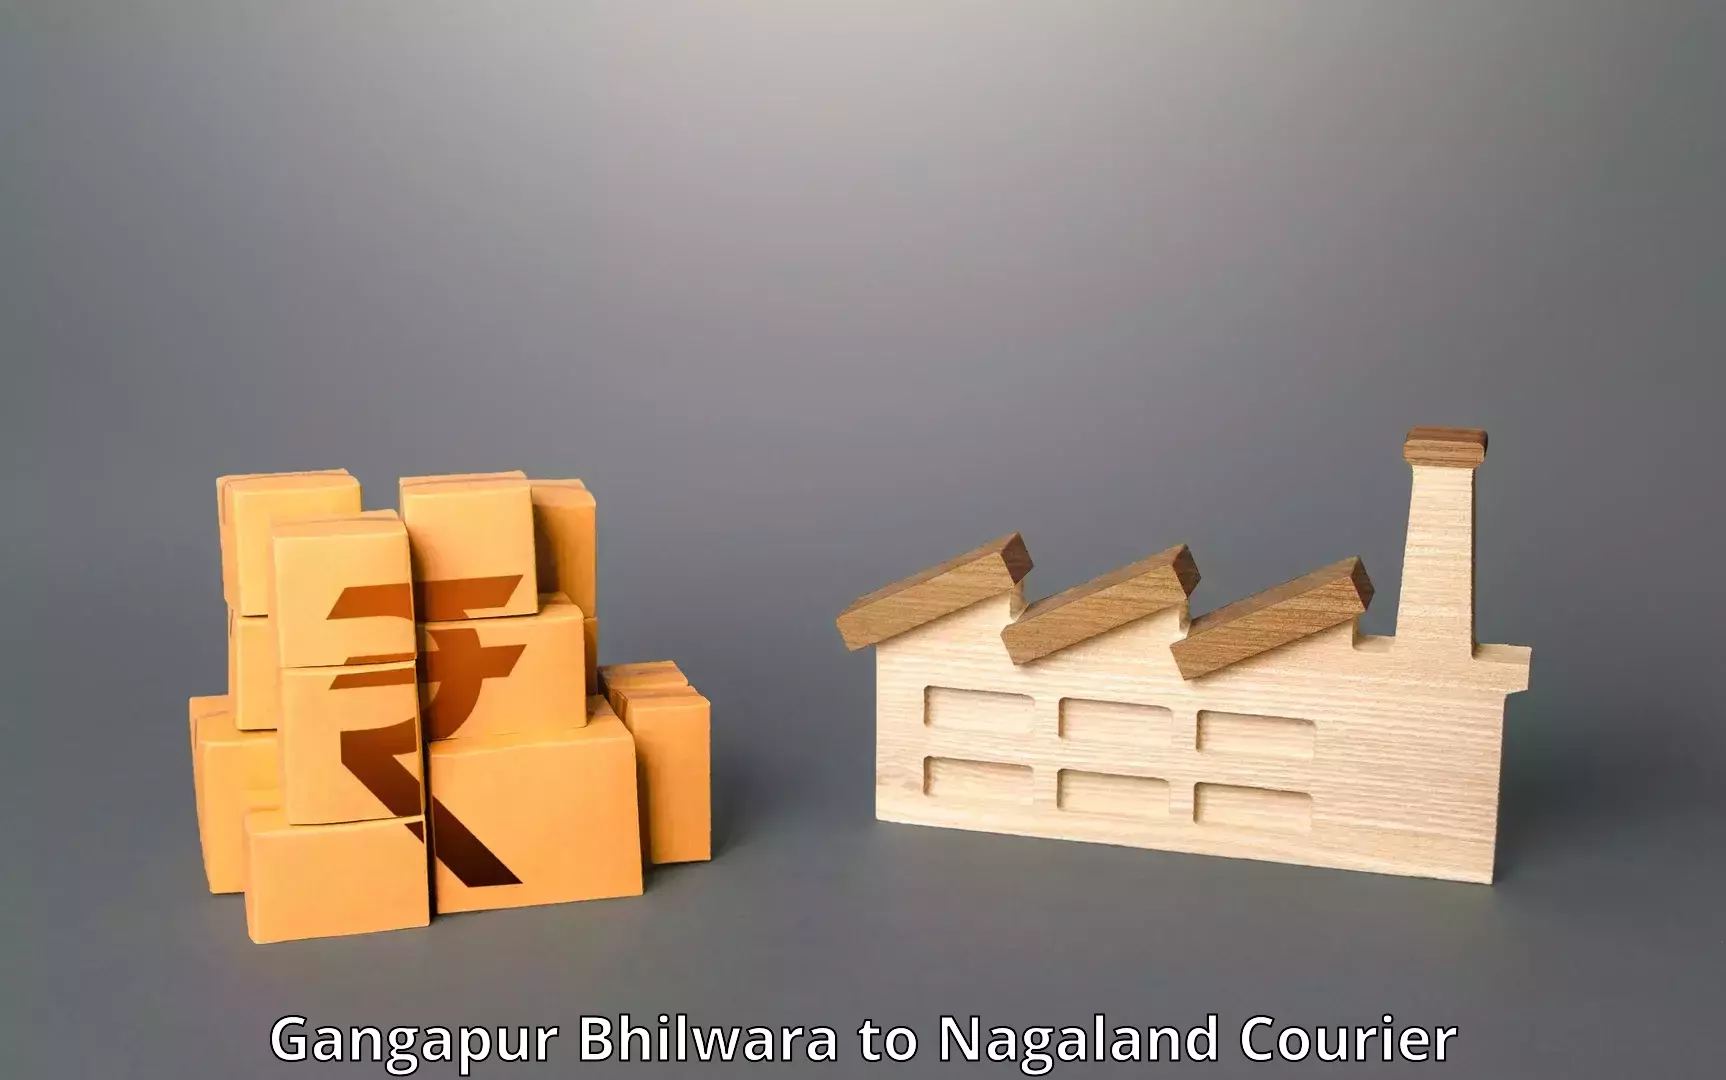 Cargo delivery service Gangapur Bhilwara to Nagaland